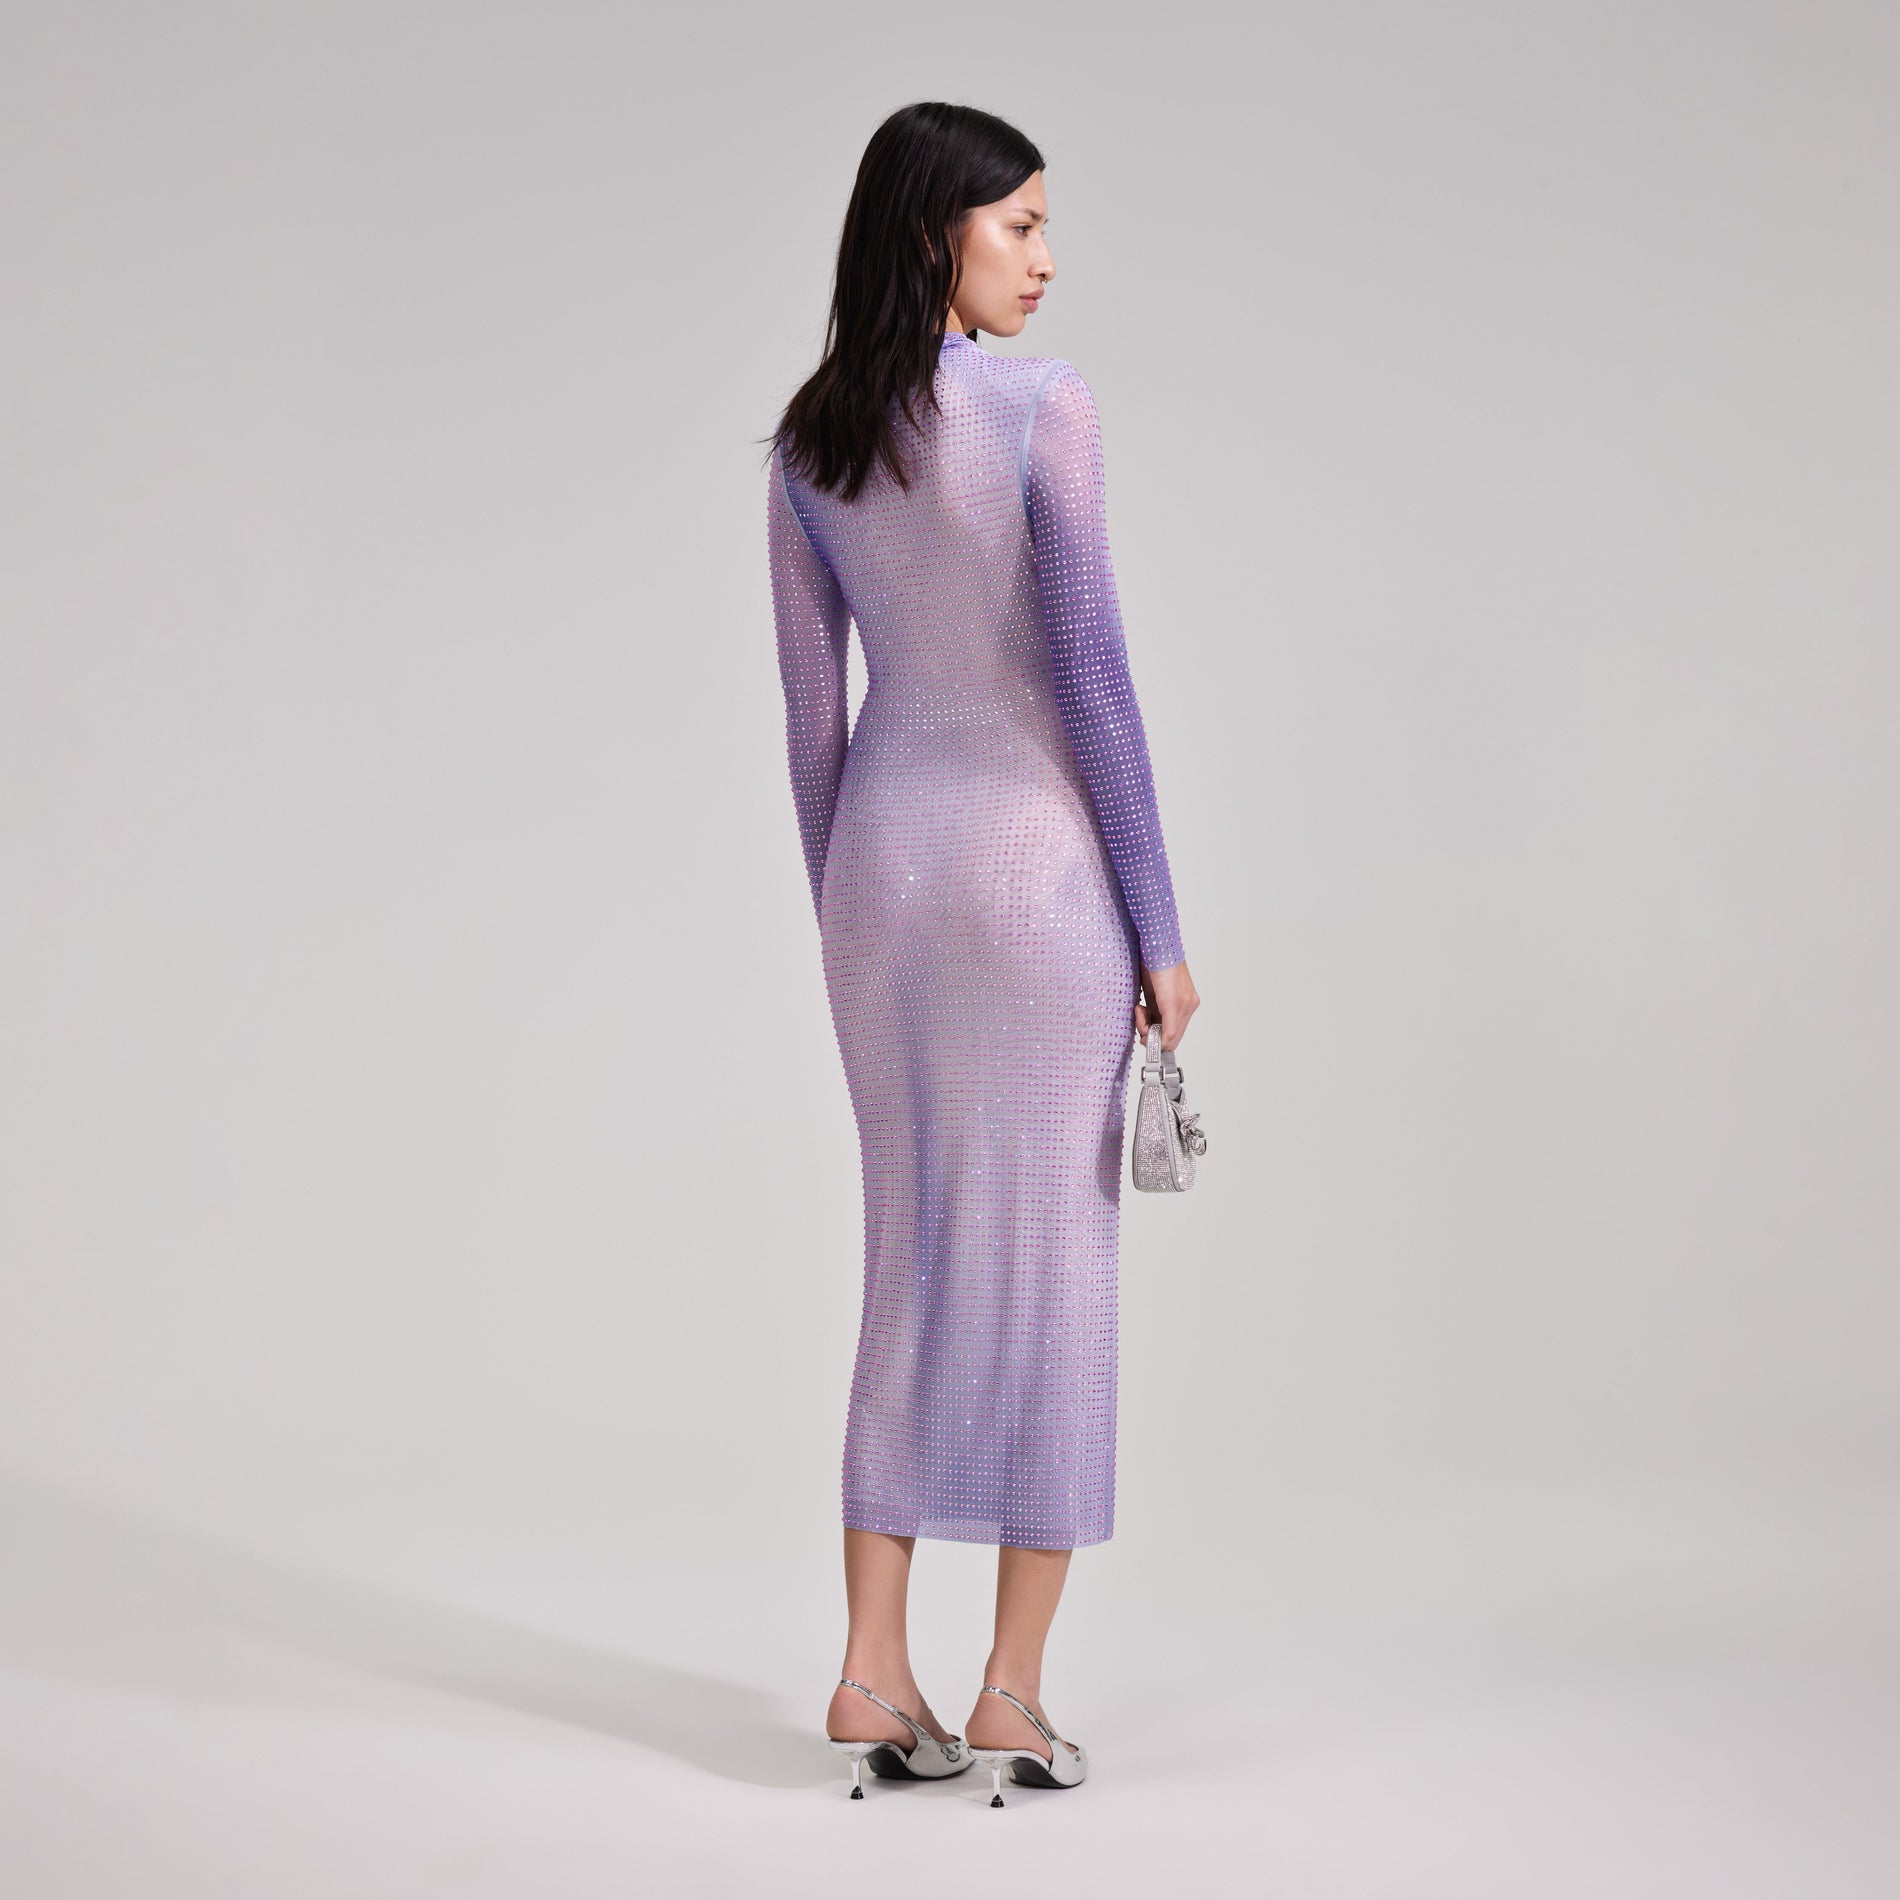 A woman wearing the Lilac Contour Print Midi Dress